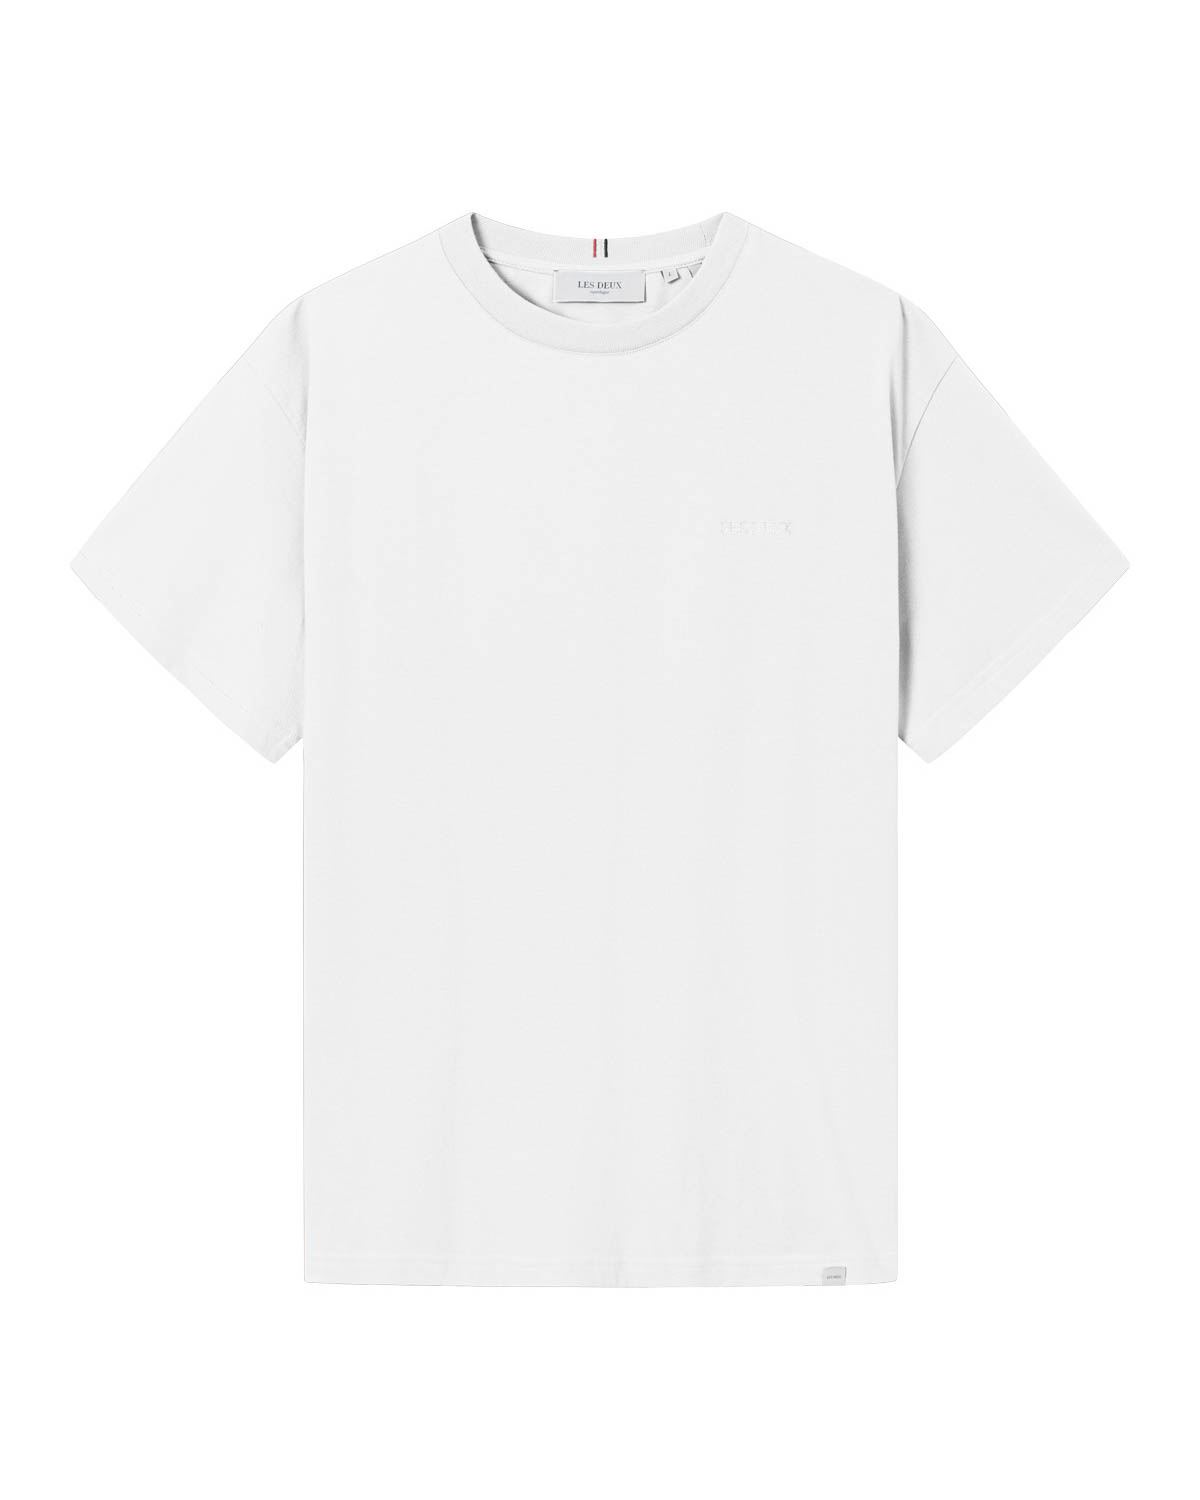 Diego T-Shirt White - Les Deux